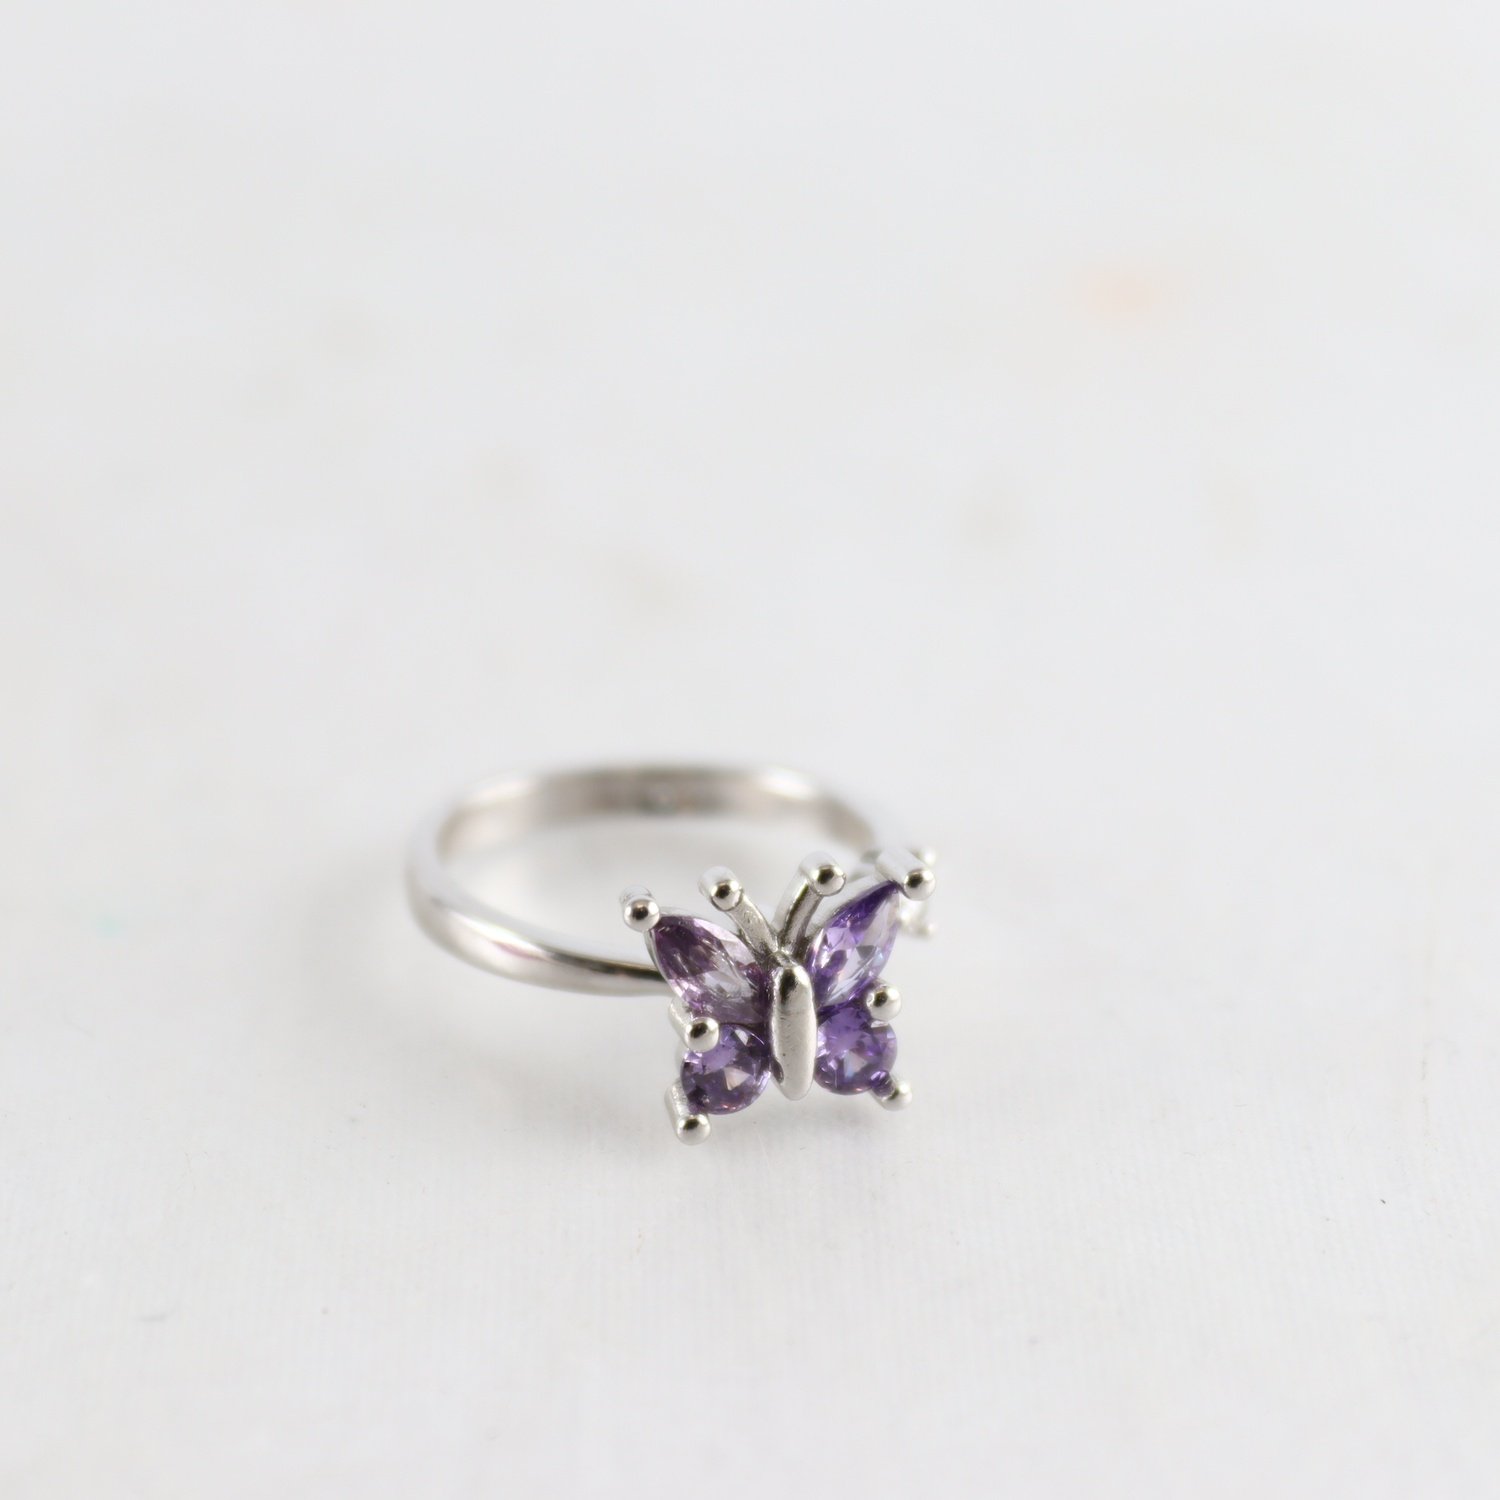 Ring, silver 925, fjäril, lila stenar, brv: 3 g.